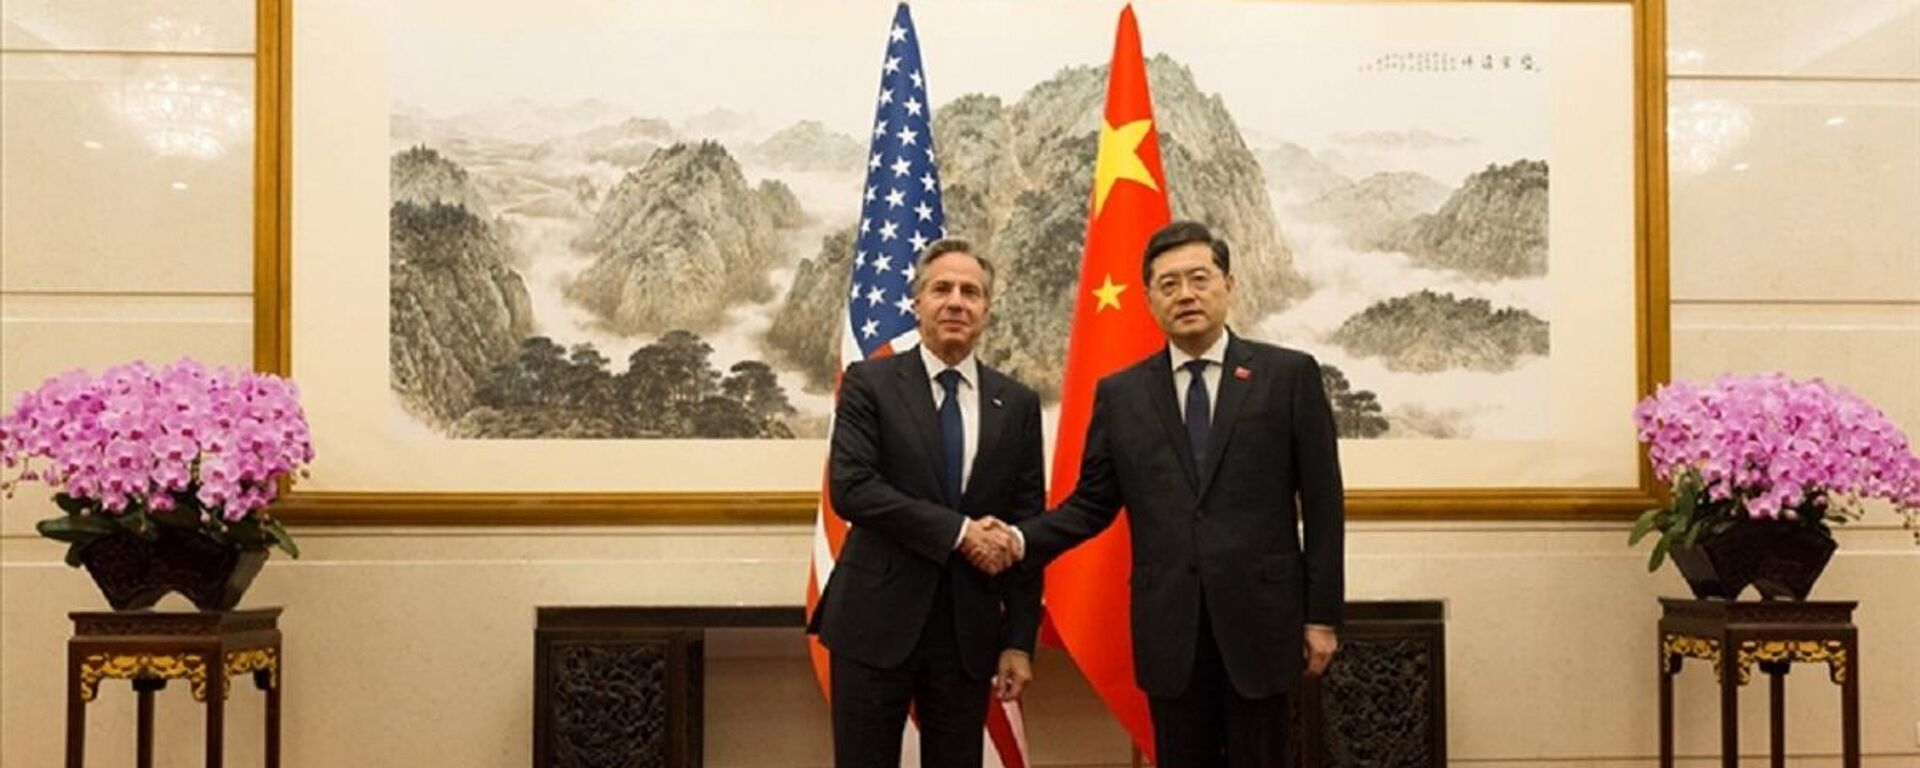 ABD Dışişleri Bakanı Anthony Blinken, Çin'e yaptığı resmi ziyaret kapsamında mevkidaşı Çin Gang ile görüştü. - Sputnik Türkiye, 1920, 18.06.2023